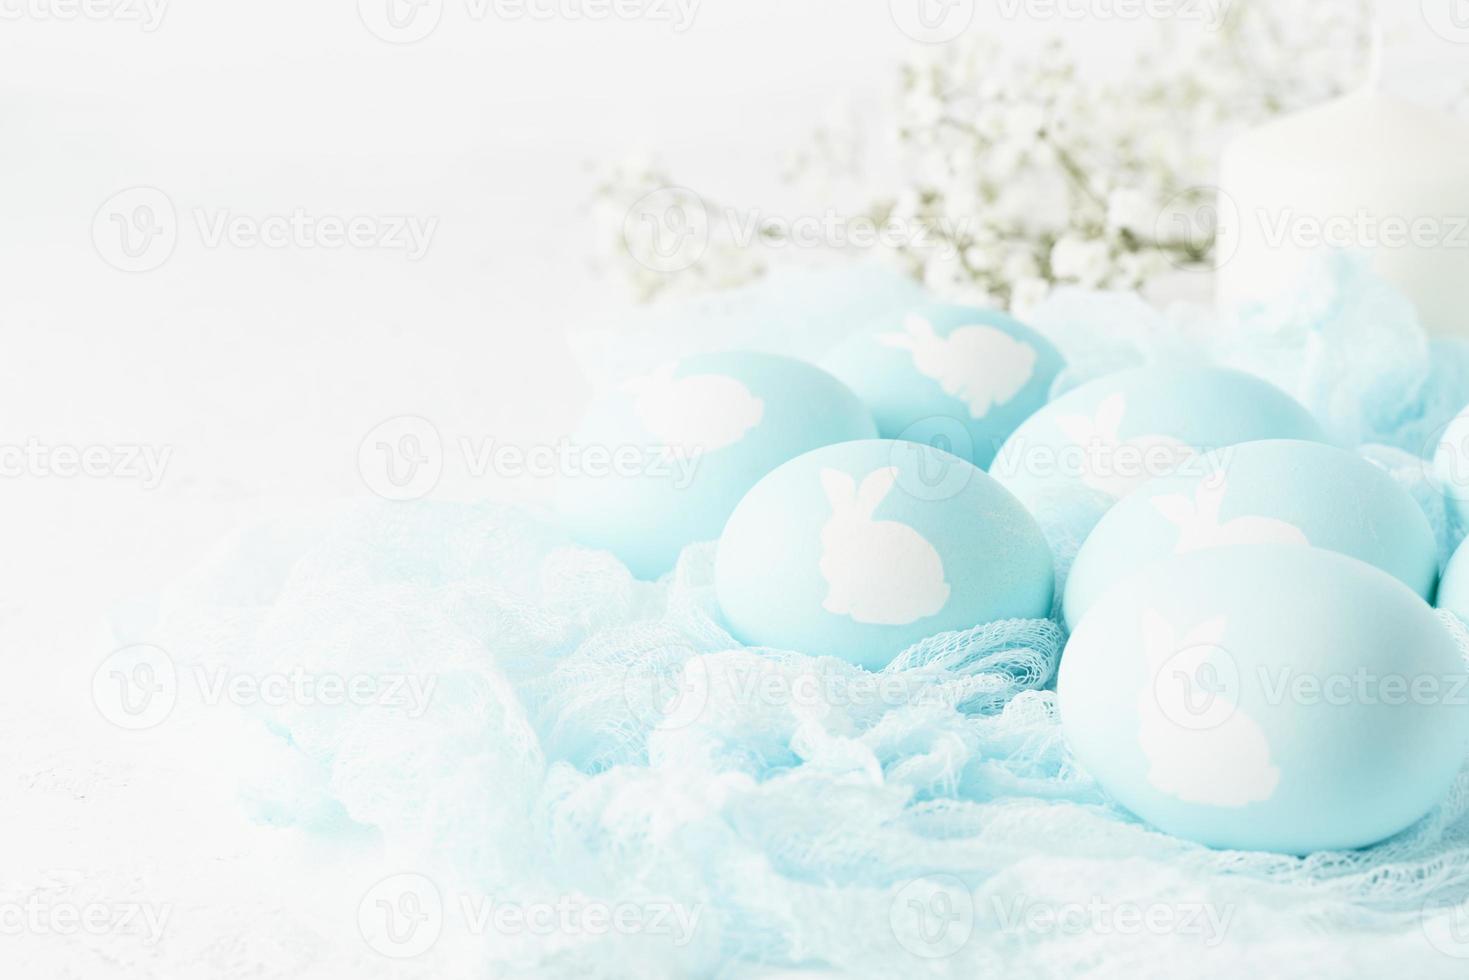 páscoa. feriado. fundo branco claro, cores pastel suaves. ovos azuis com imagem de coelho foto